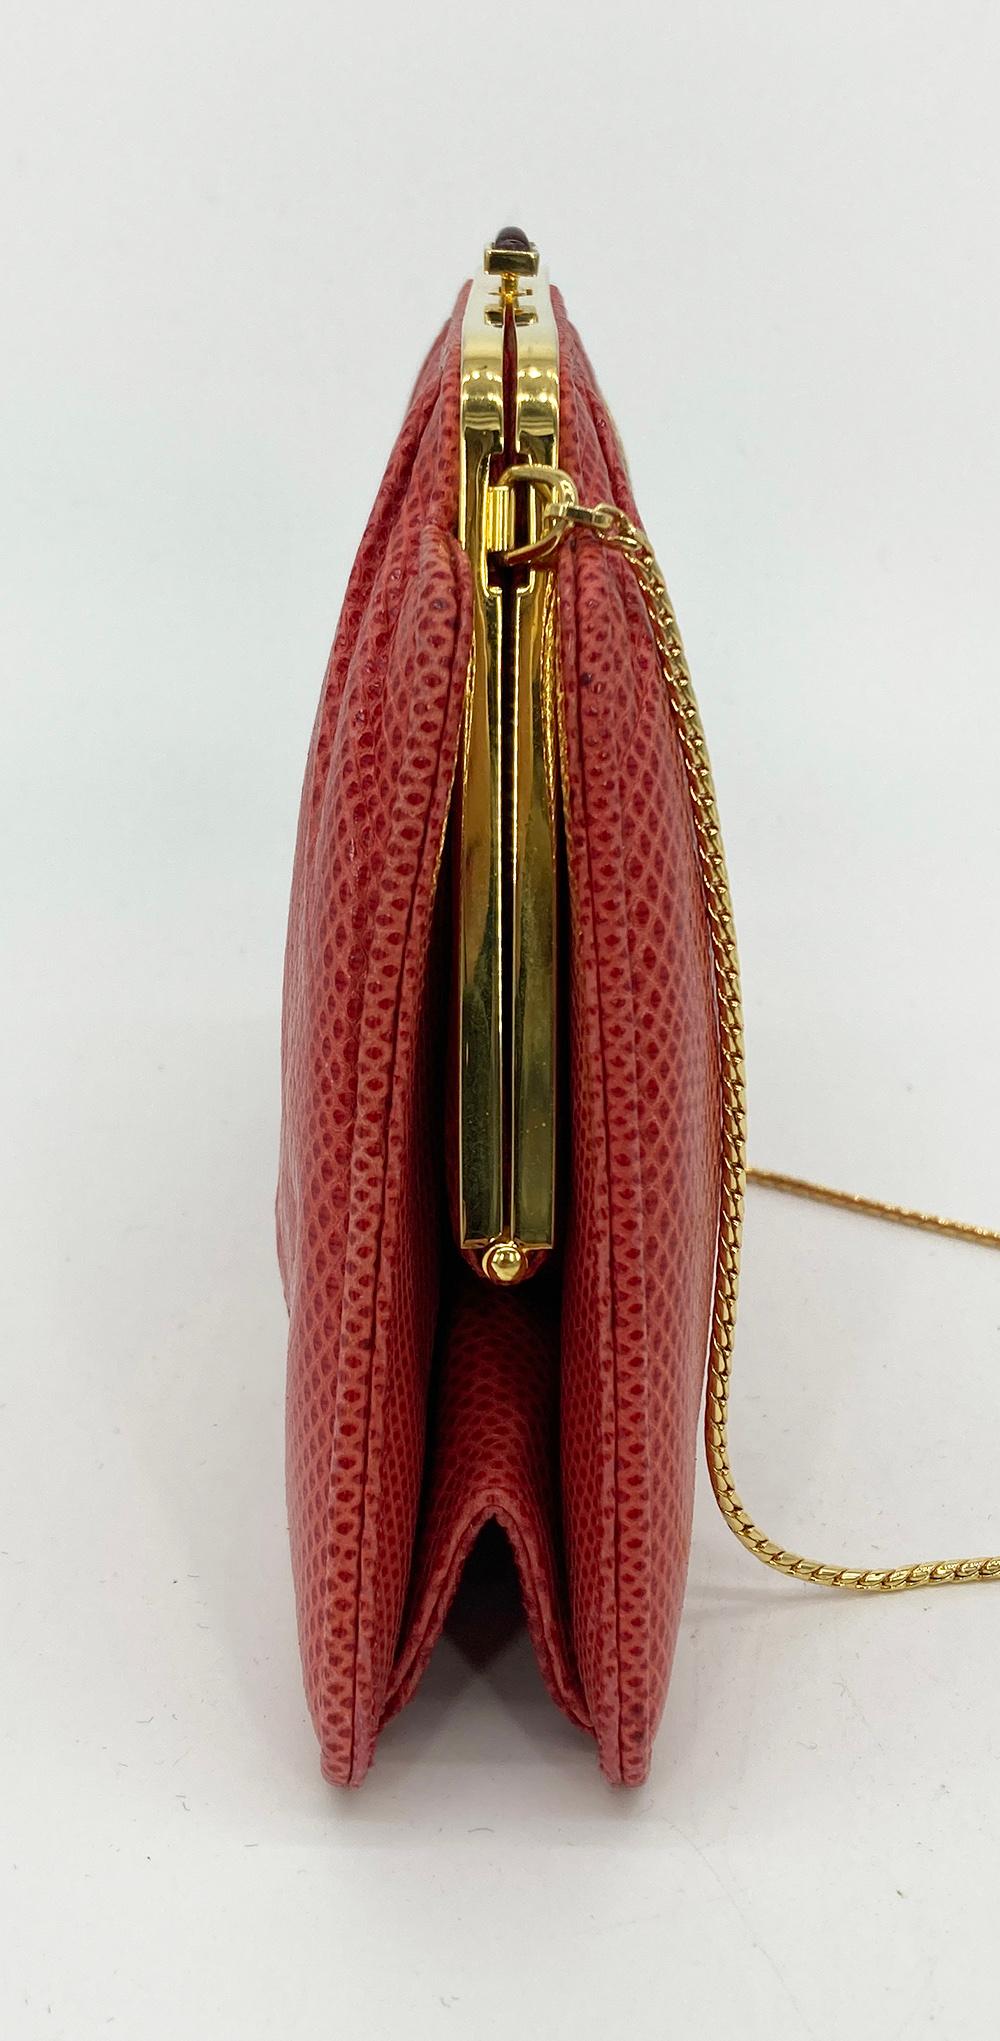 Judith Leiber Red Lizard Small Shoulder Bag in sehr gutem Vintage-Zustand. Rotes Eidechsenleder mit goldenen Beschlägen und Schulterriemen mit Goldkette. Ein Knopfverschluss an der Oberseite führt zu einem Innenraum aus rotem Nylon mit einer